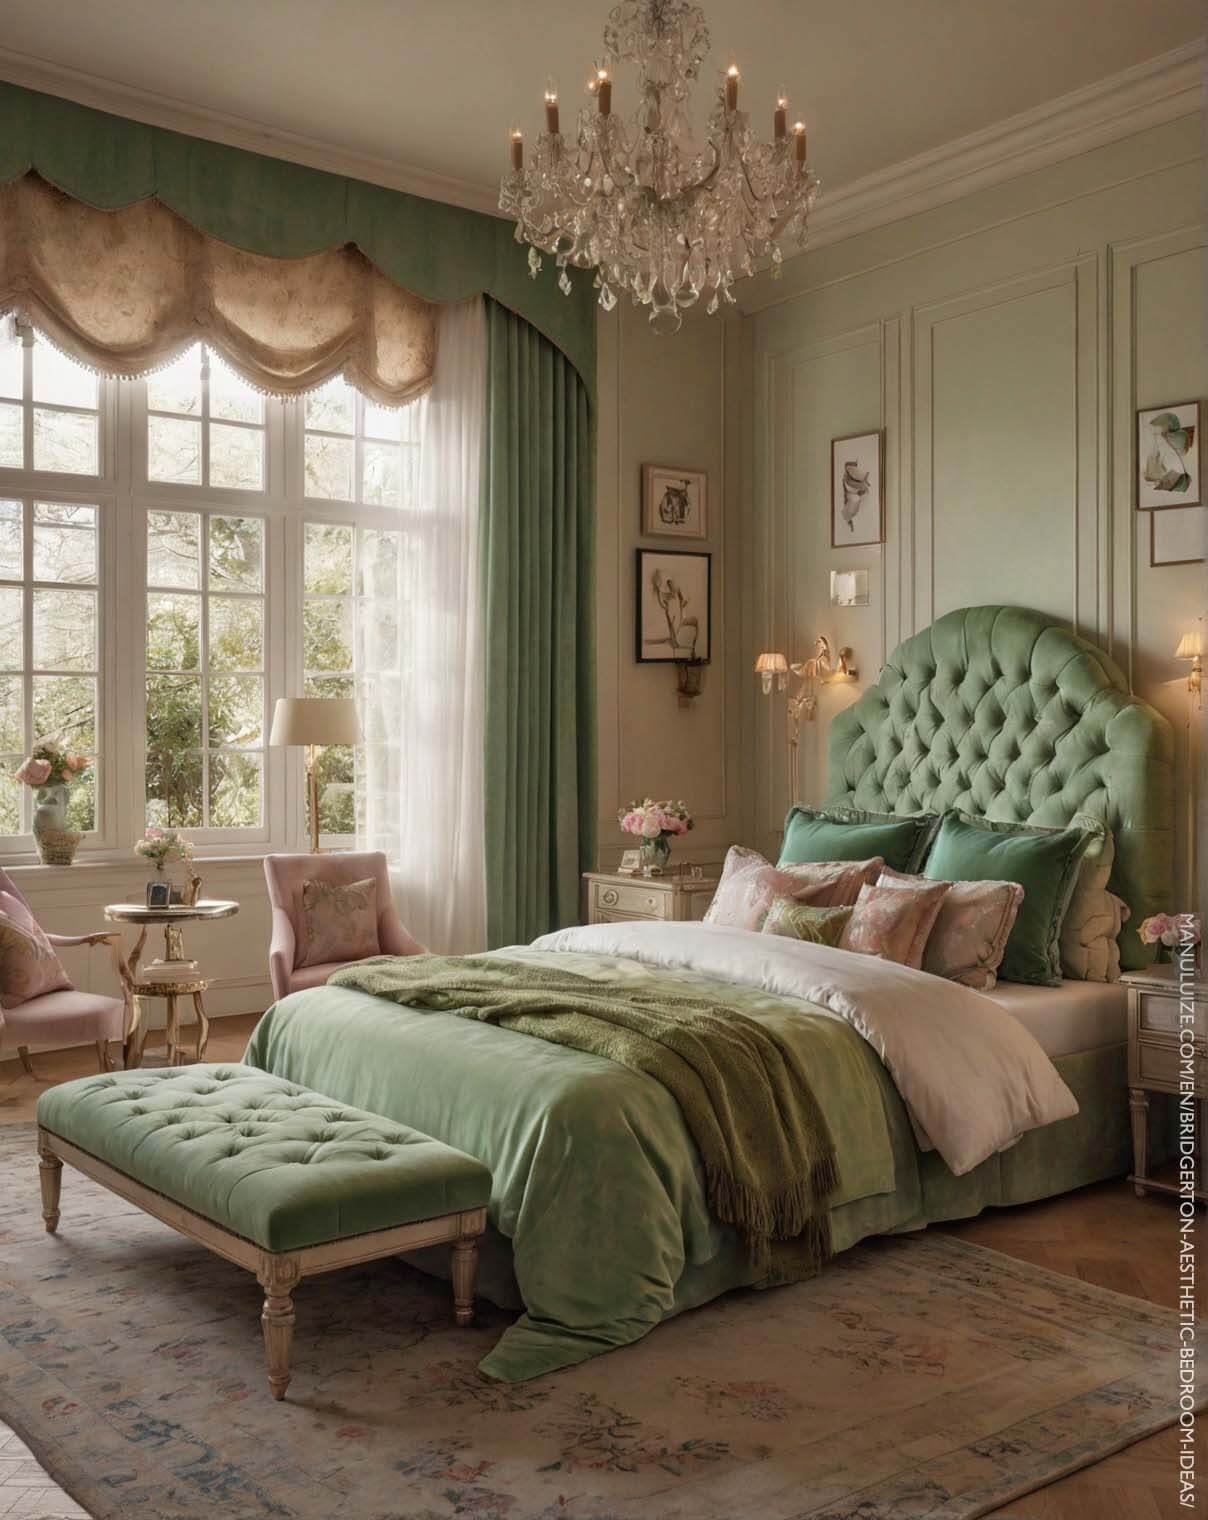 Pastel green Bridgerton aesthetic bedroom